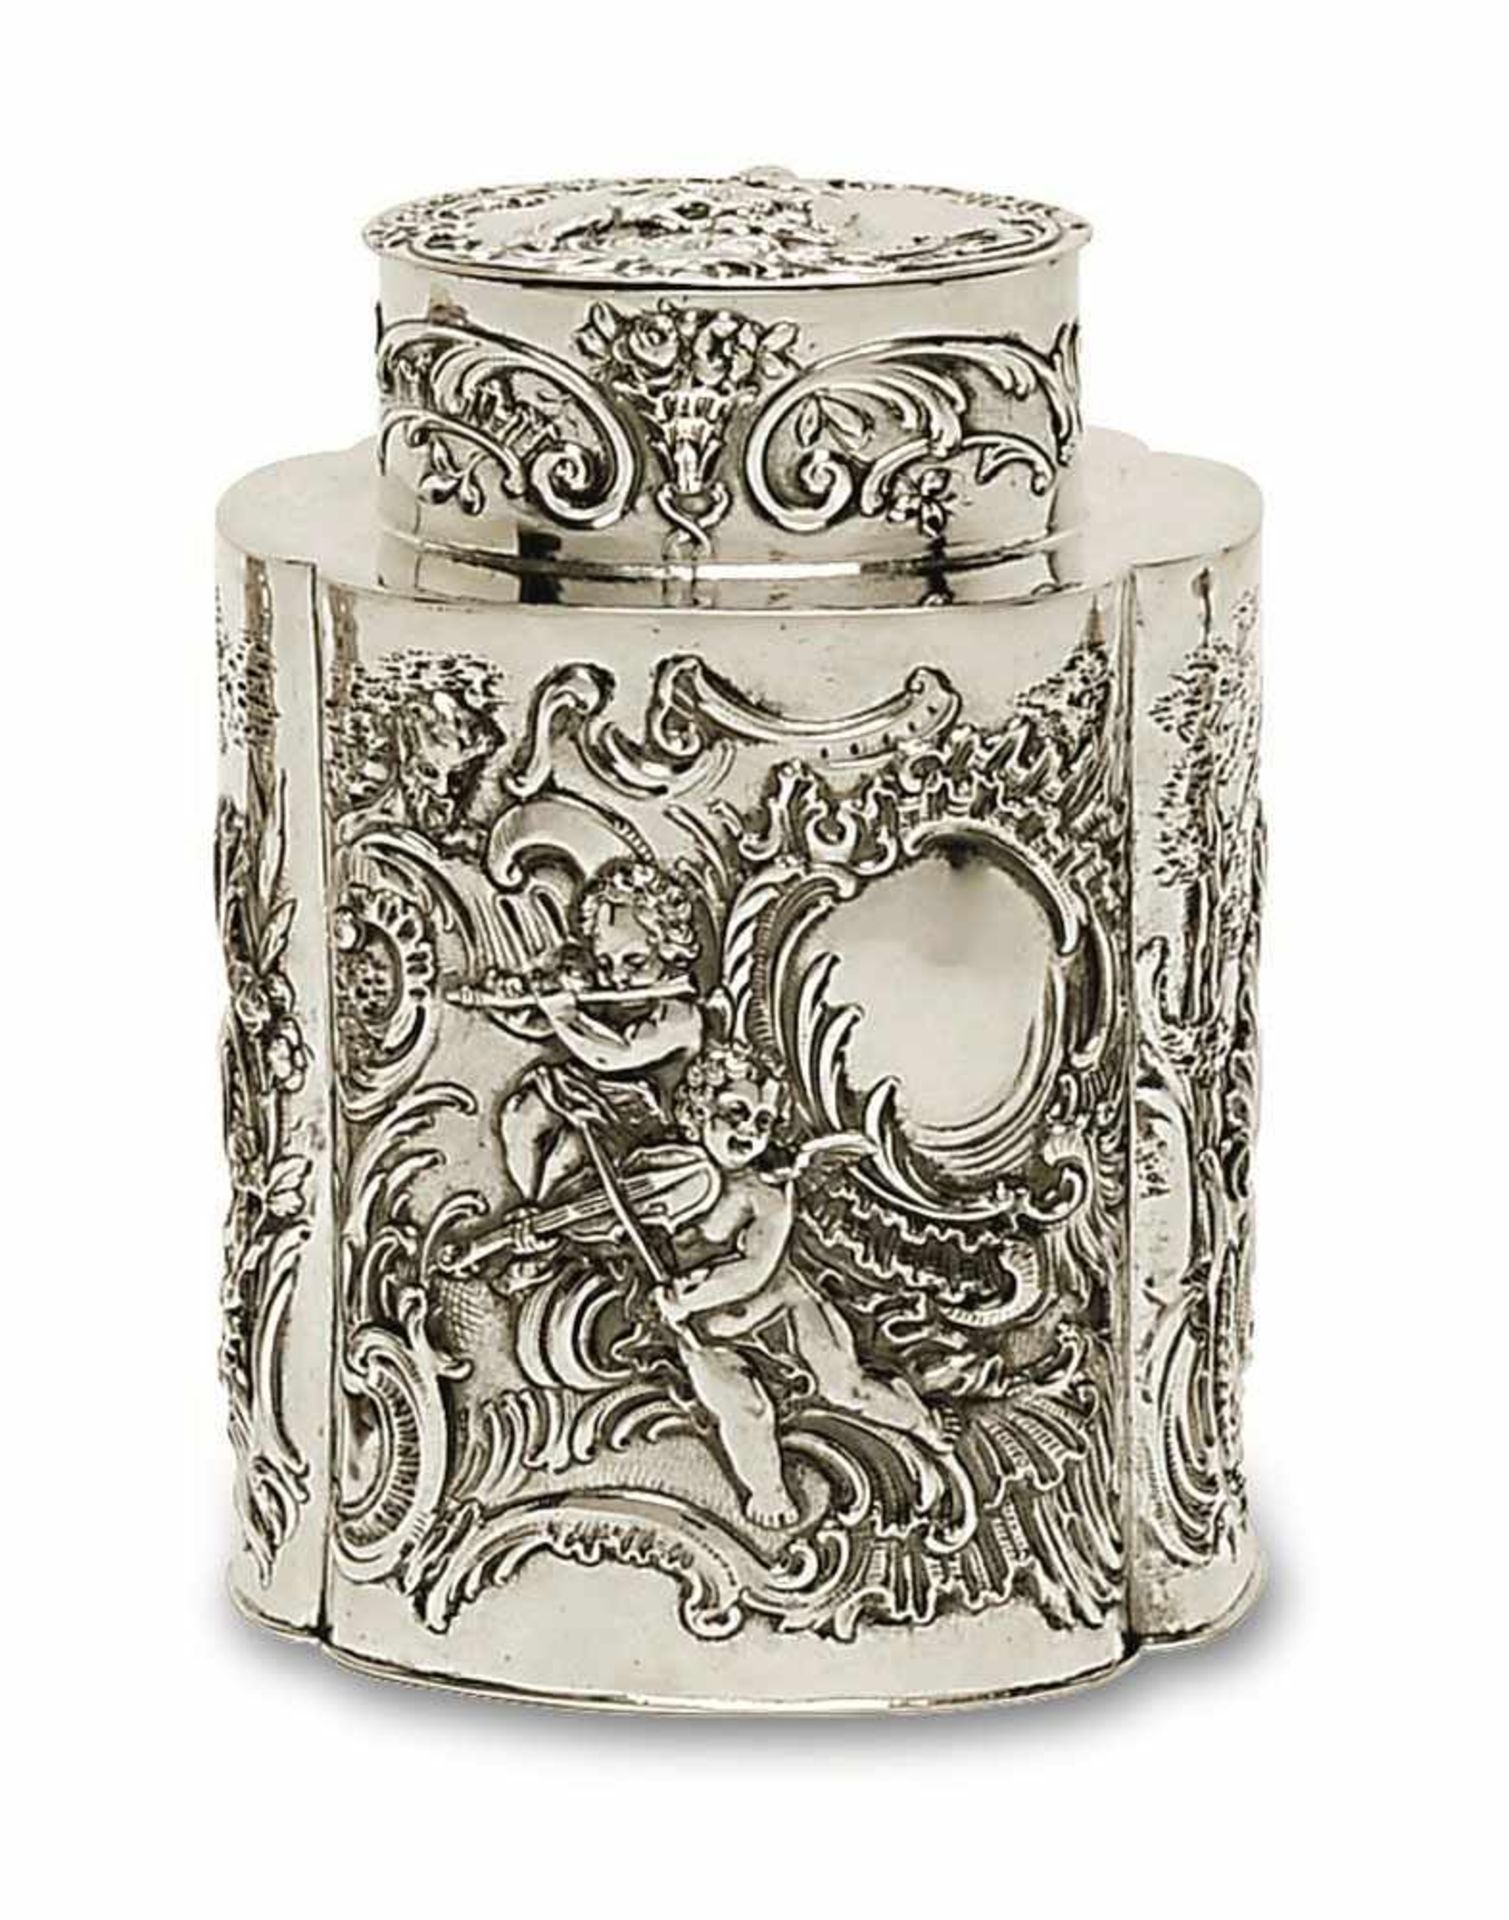 Teedose Barockstil Silber. Vierpassige, zylindrische Wandung mit reliefiertem, ziseliertem und